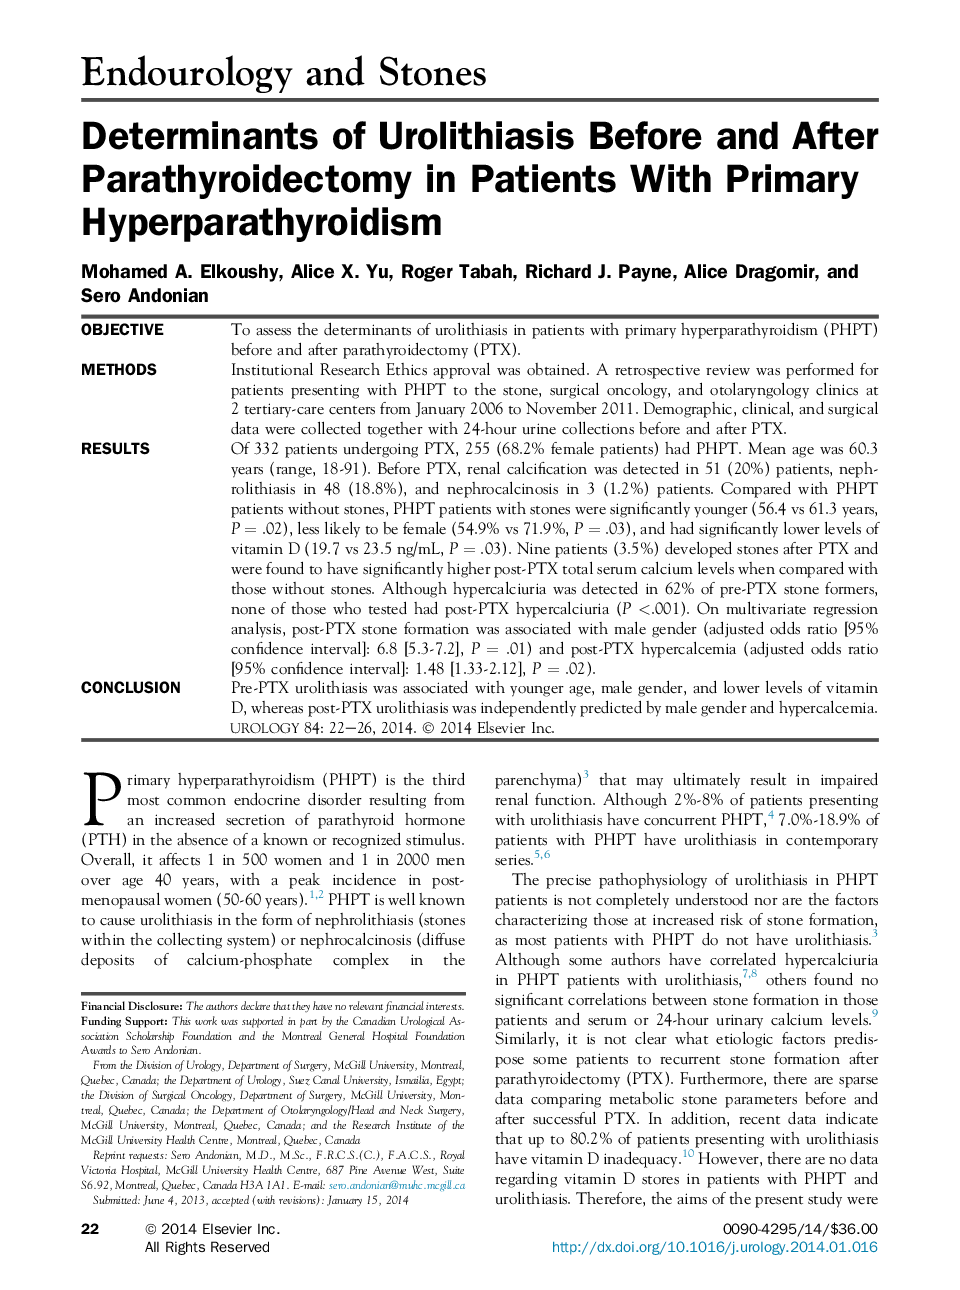 عوامل تعیین کننده اورولوژیست قبل و بعد از پاراتیدروئیدکتومی در بیماران مبتلا به هیپرپاراتیروئید اولیه 